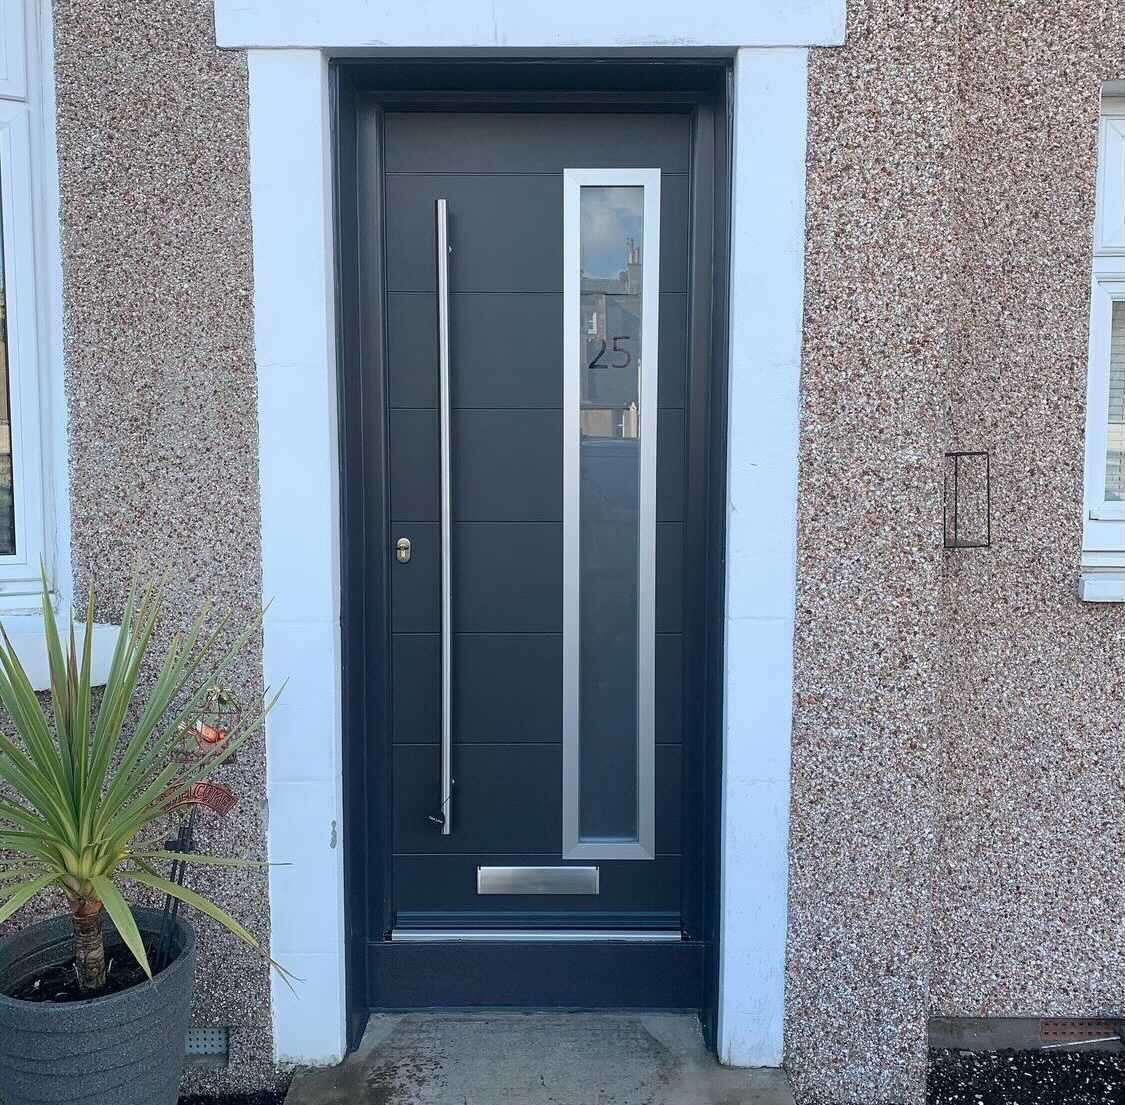 Dark Grey Aluminium Froon Door with Strip WIndow